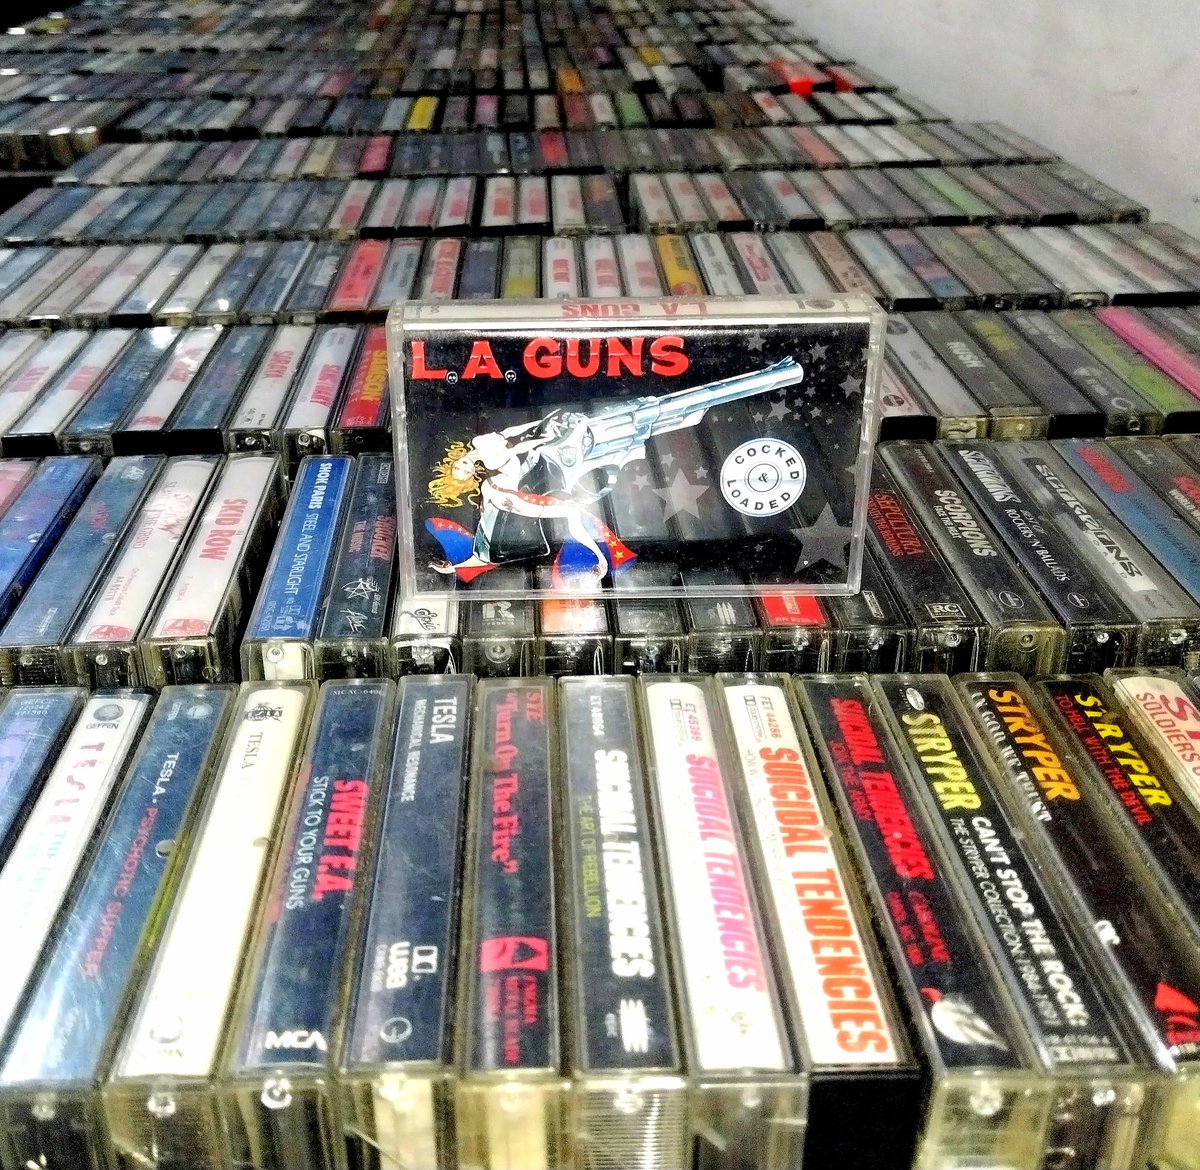 22 de Agosto de 1989, @laguns lanzó su segundo álbum 'Cocked And Loaded'. Tras el éxito de su álbum debut homónimo el año anterior, L.A. Guns se dispuso rápidamente a grabar el seguimiento en 1989. 
#RipAndTear
#NeverEnough
#TheBalladOfJayne 
#IWannaBeYourMan
#Malaria
🤘🏻😎